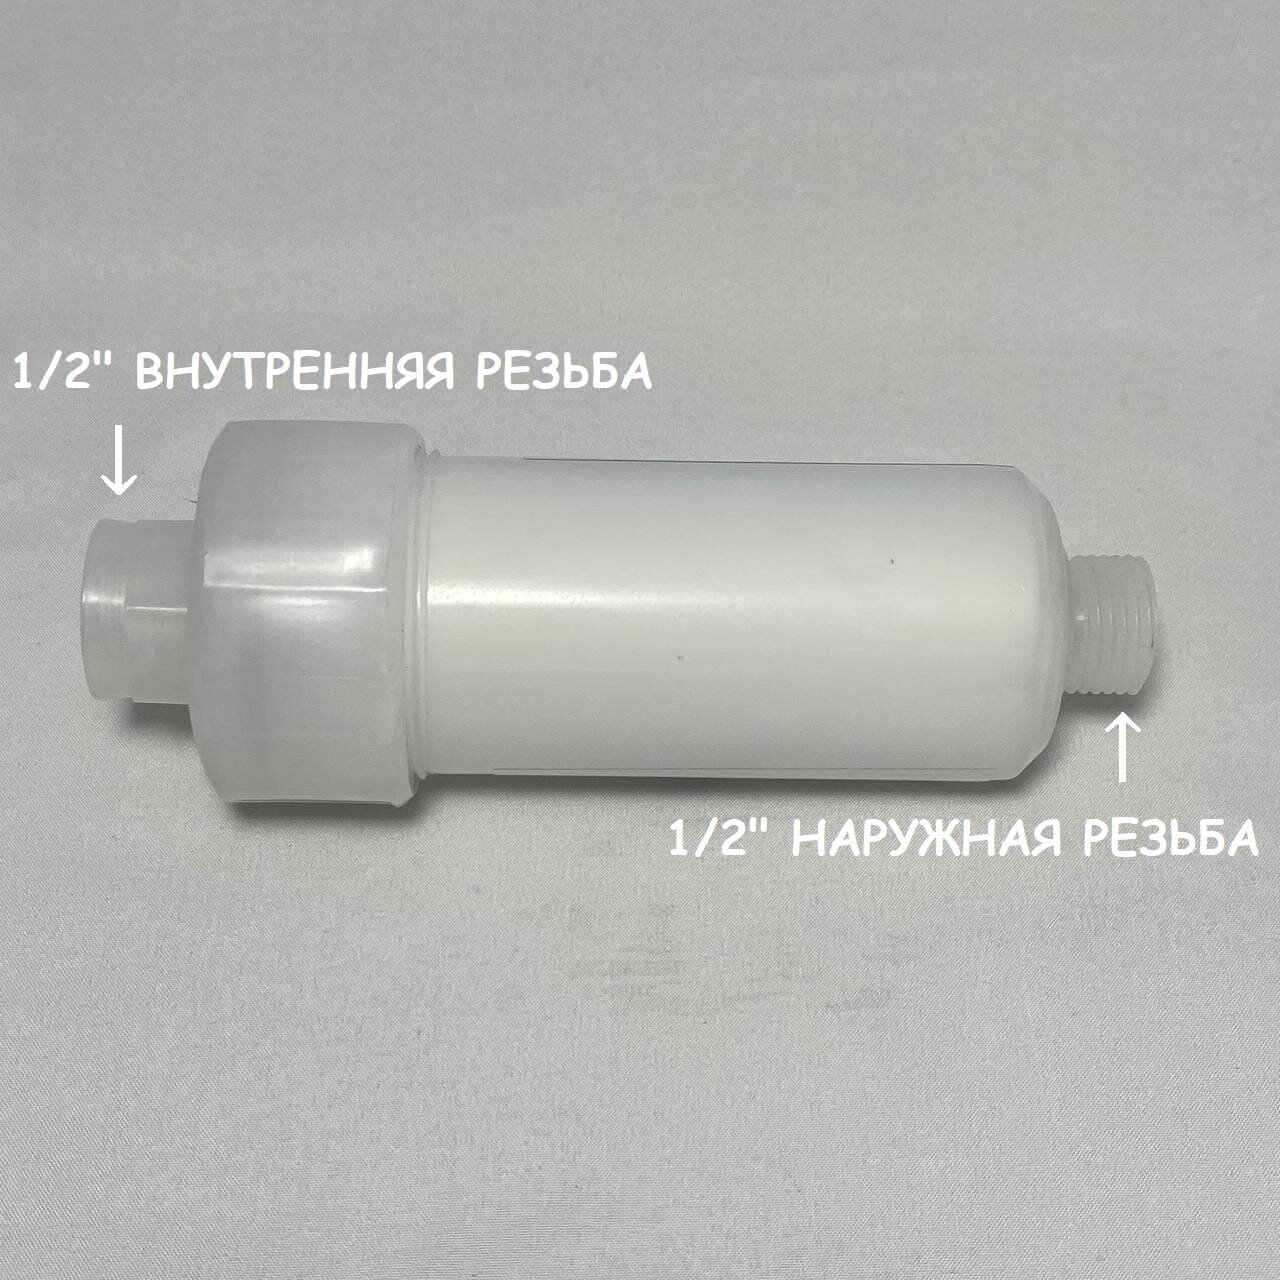 Фильтр механический UFAFILTER со сменным картриджем 5 микрон перед фильтром воды на резьбе 1/2"